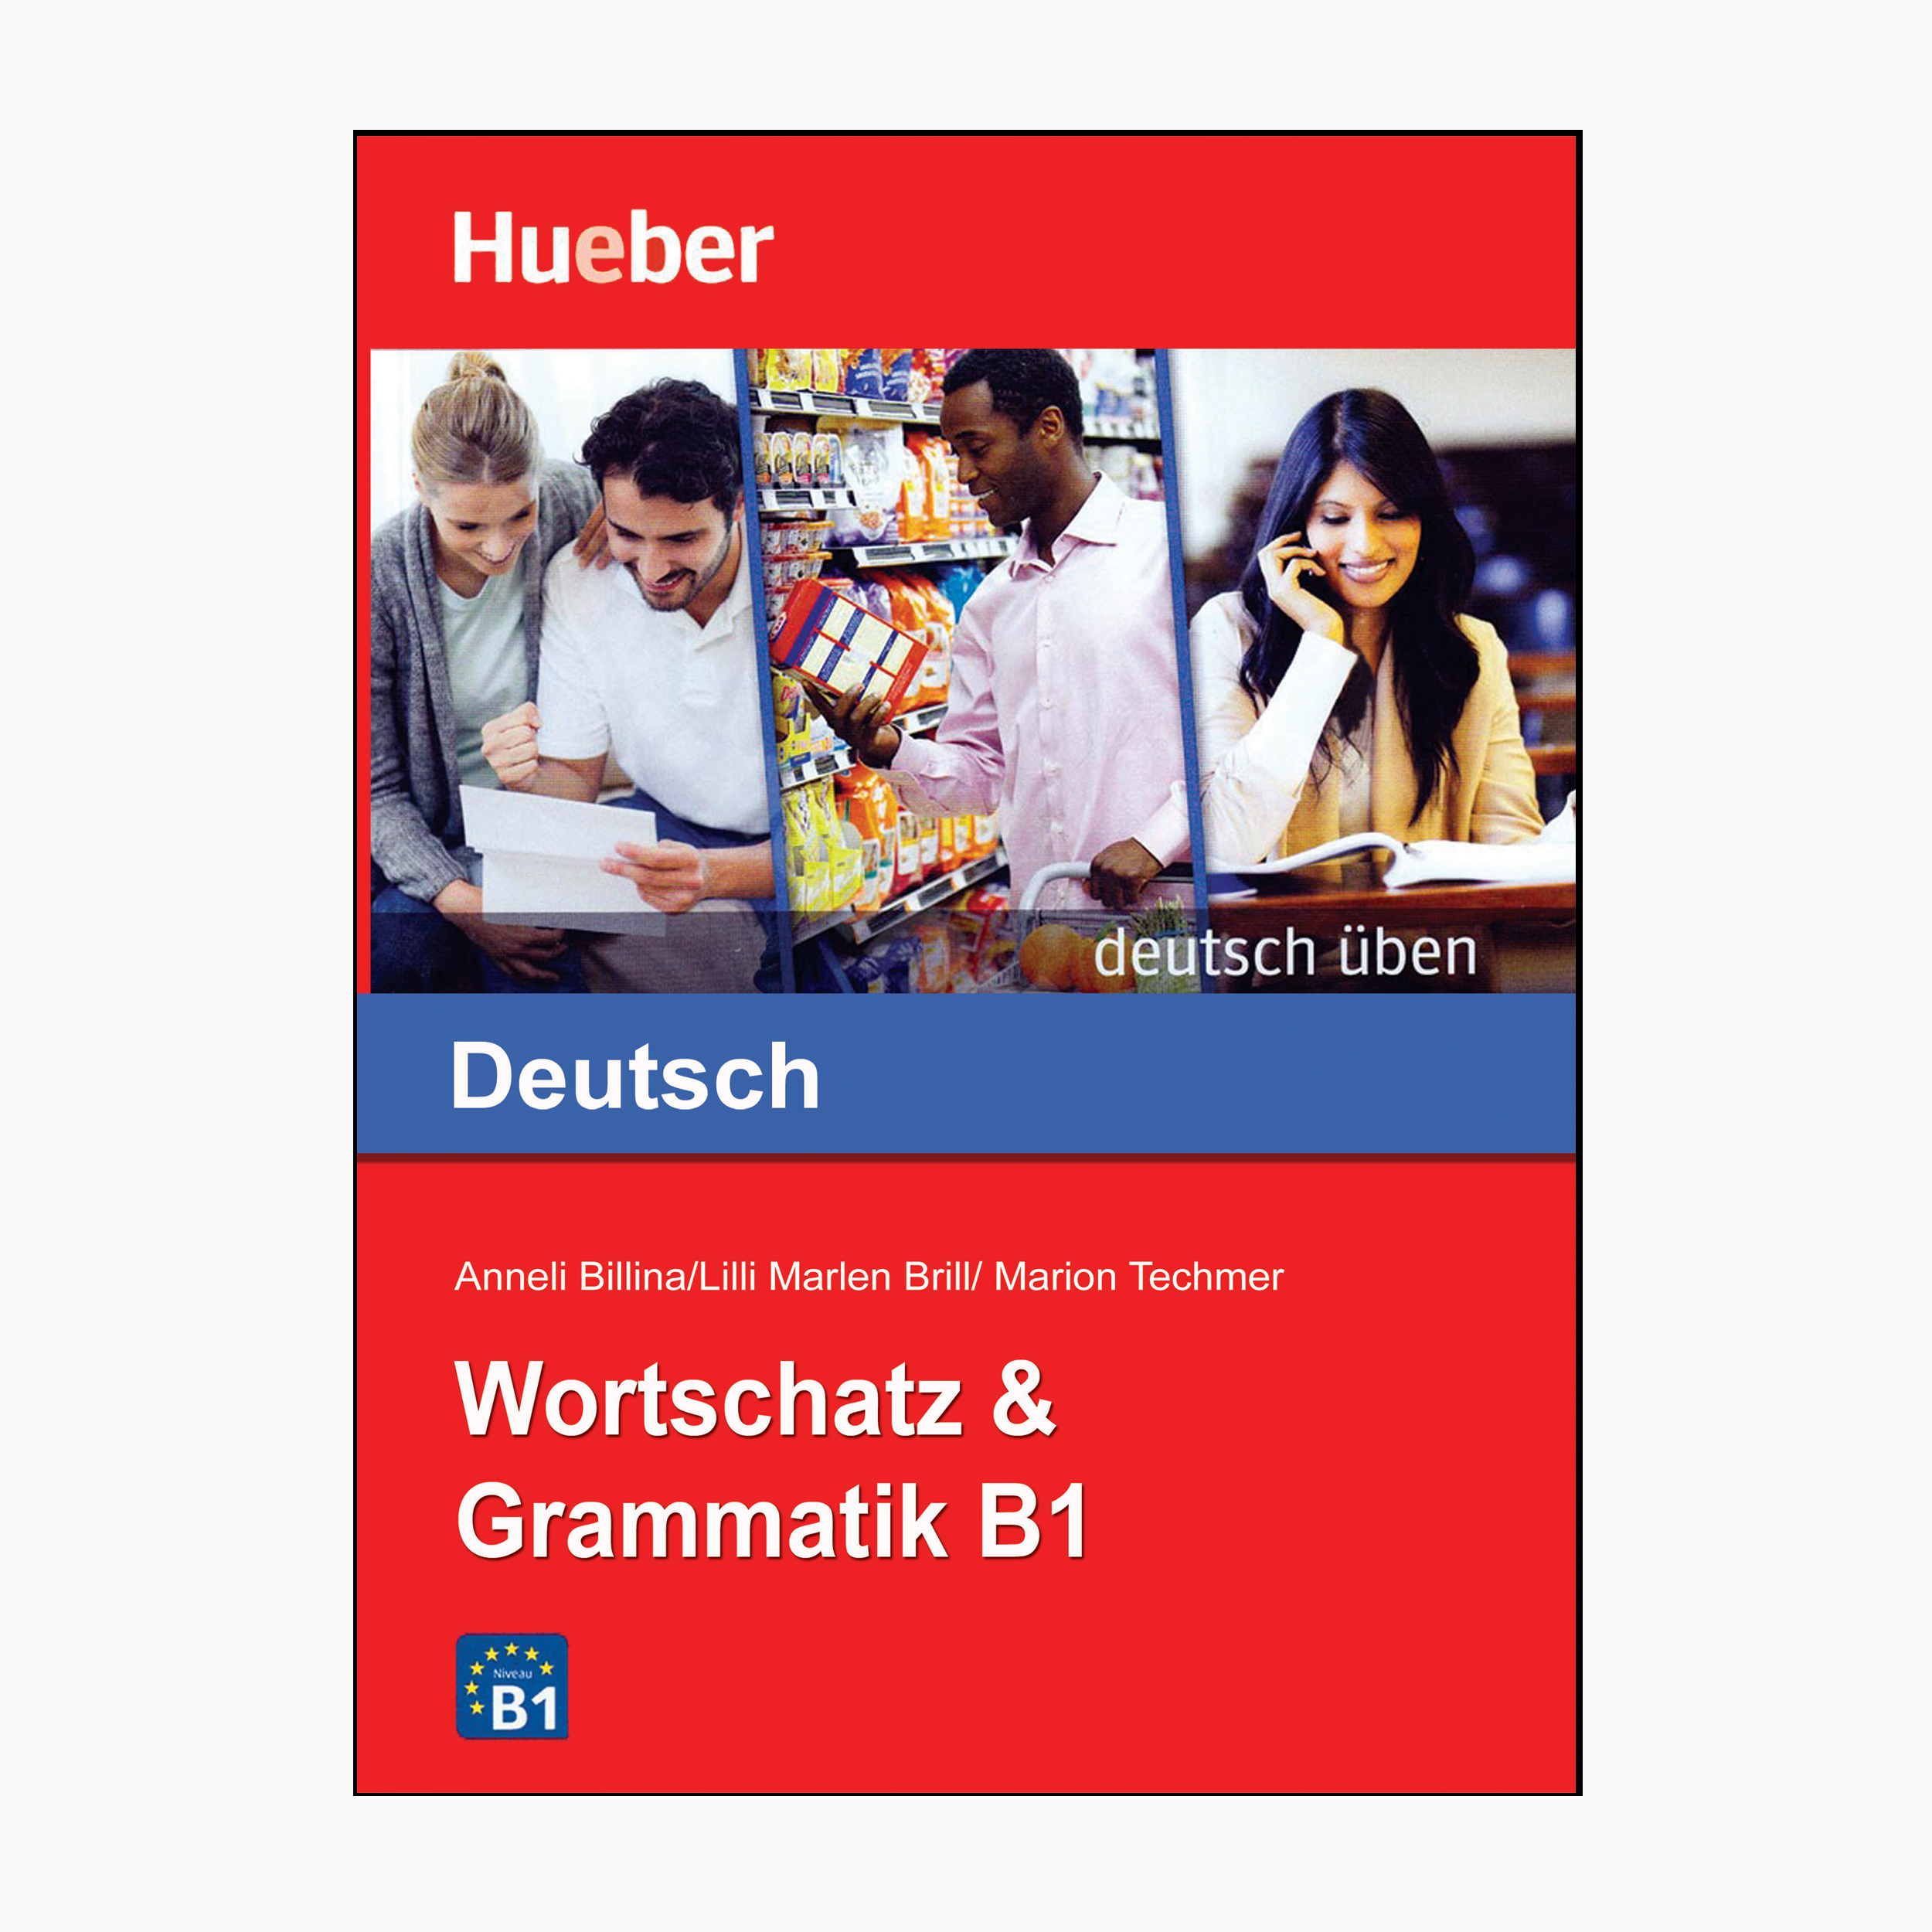 کتاب Wortschatz &amp; Grammatik B1 اثر جمعی از نویسندگان انتشارات هوبر